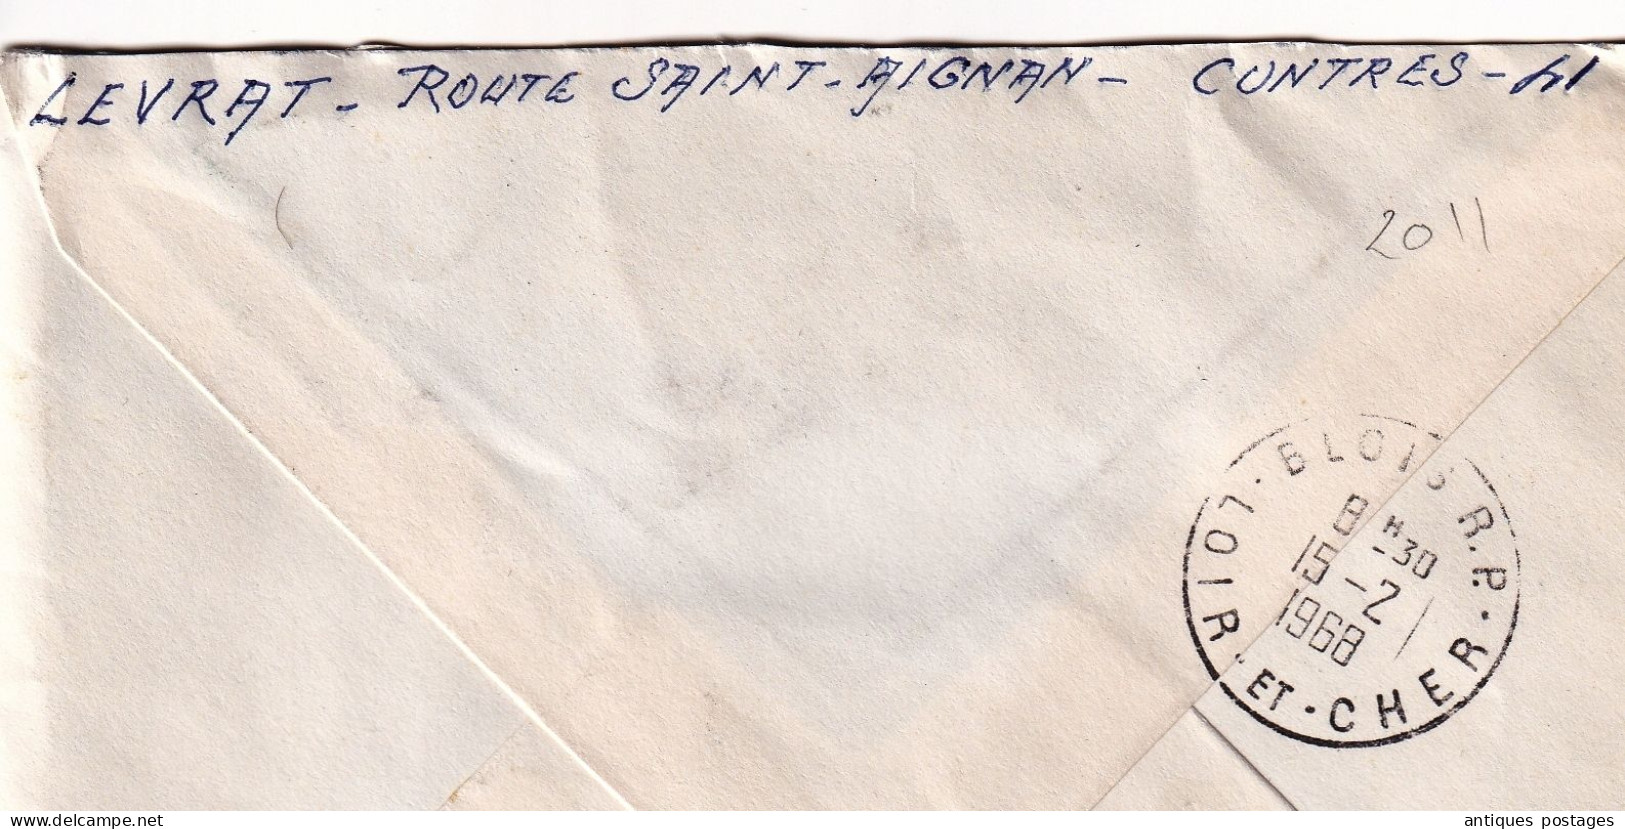 Lettre Recommandé 1968 Contres Loir Et Cher Poste Aérienne Mystère 20 Chapelle Roncham Haute Saône - Cartas & Documentos